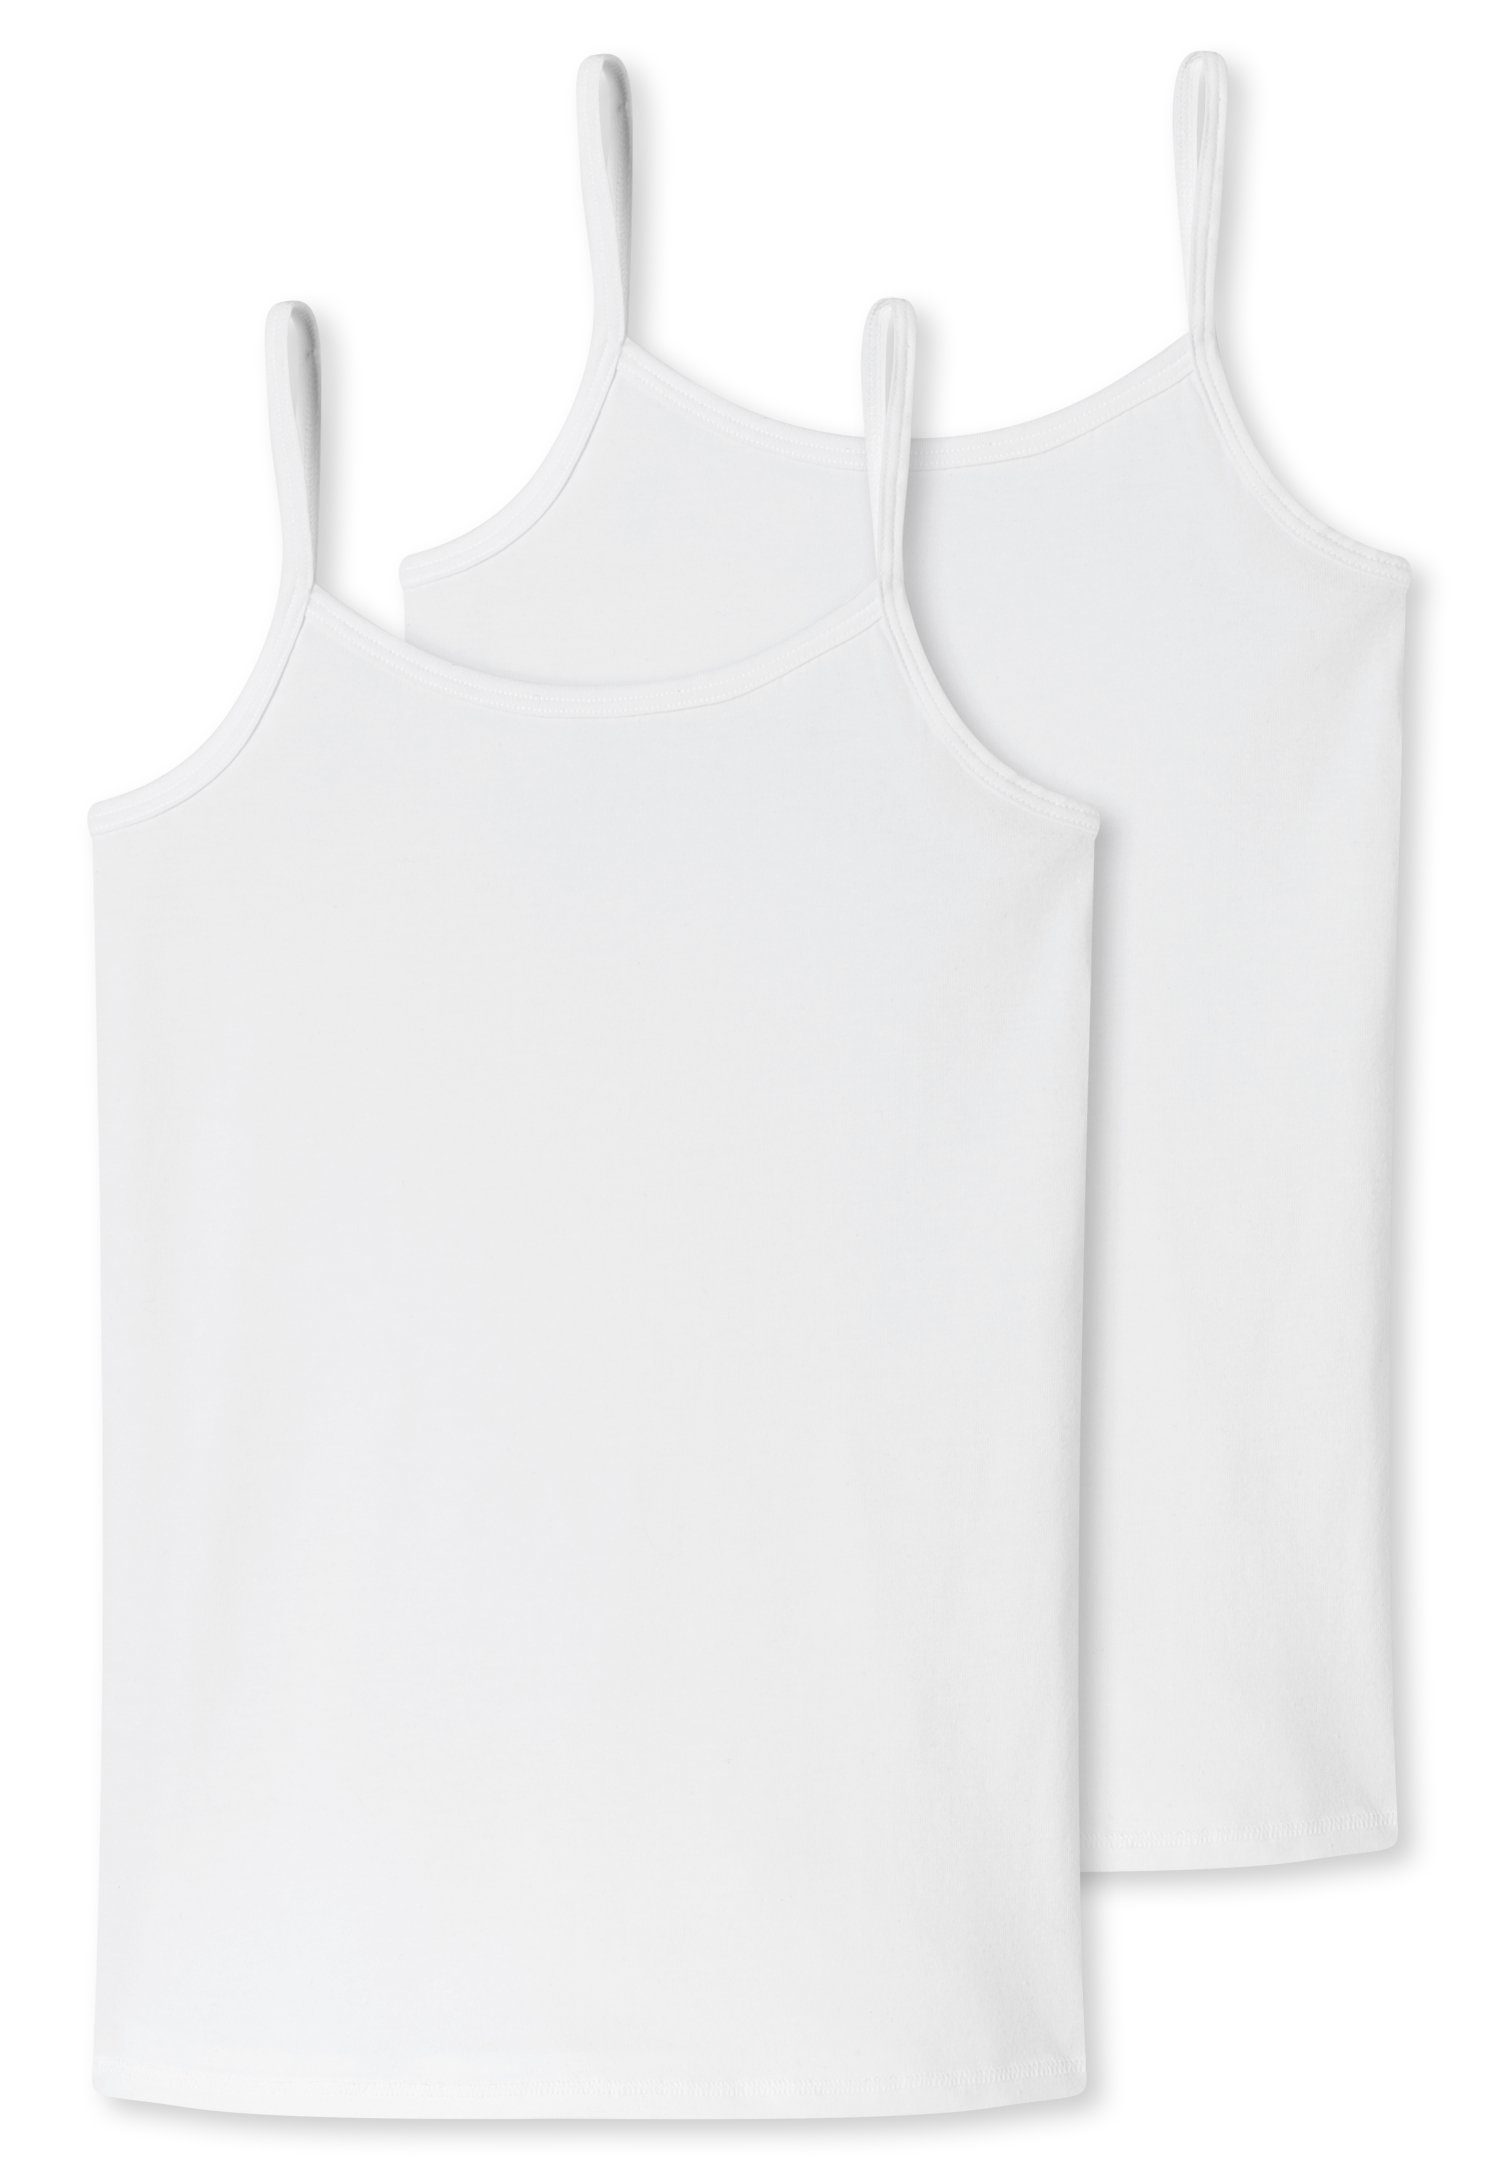 Schiesser Unterhemd (2er-Pack) mit weiß schmalen Trägern